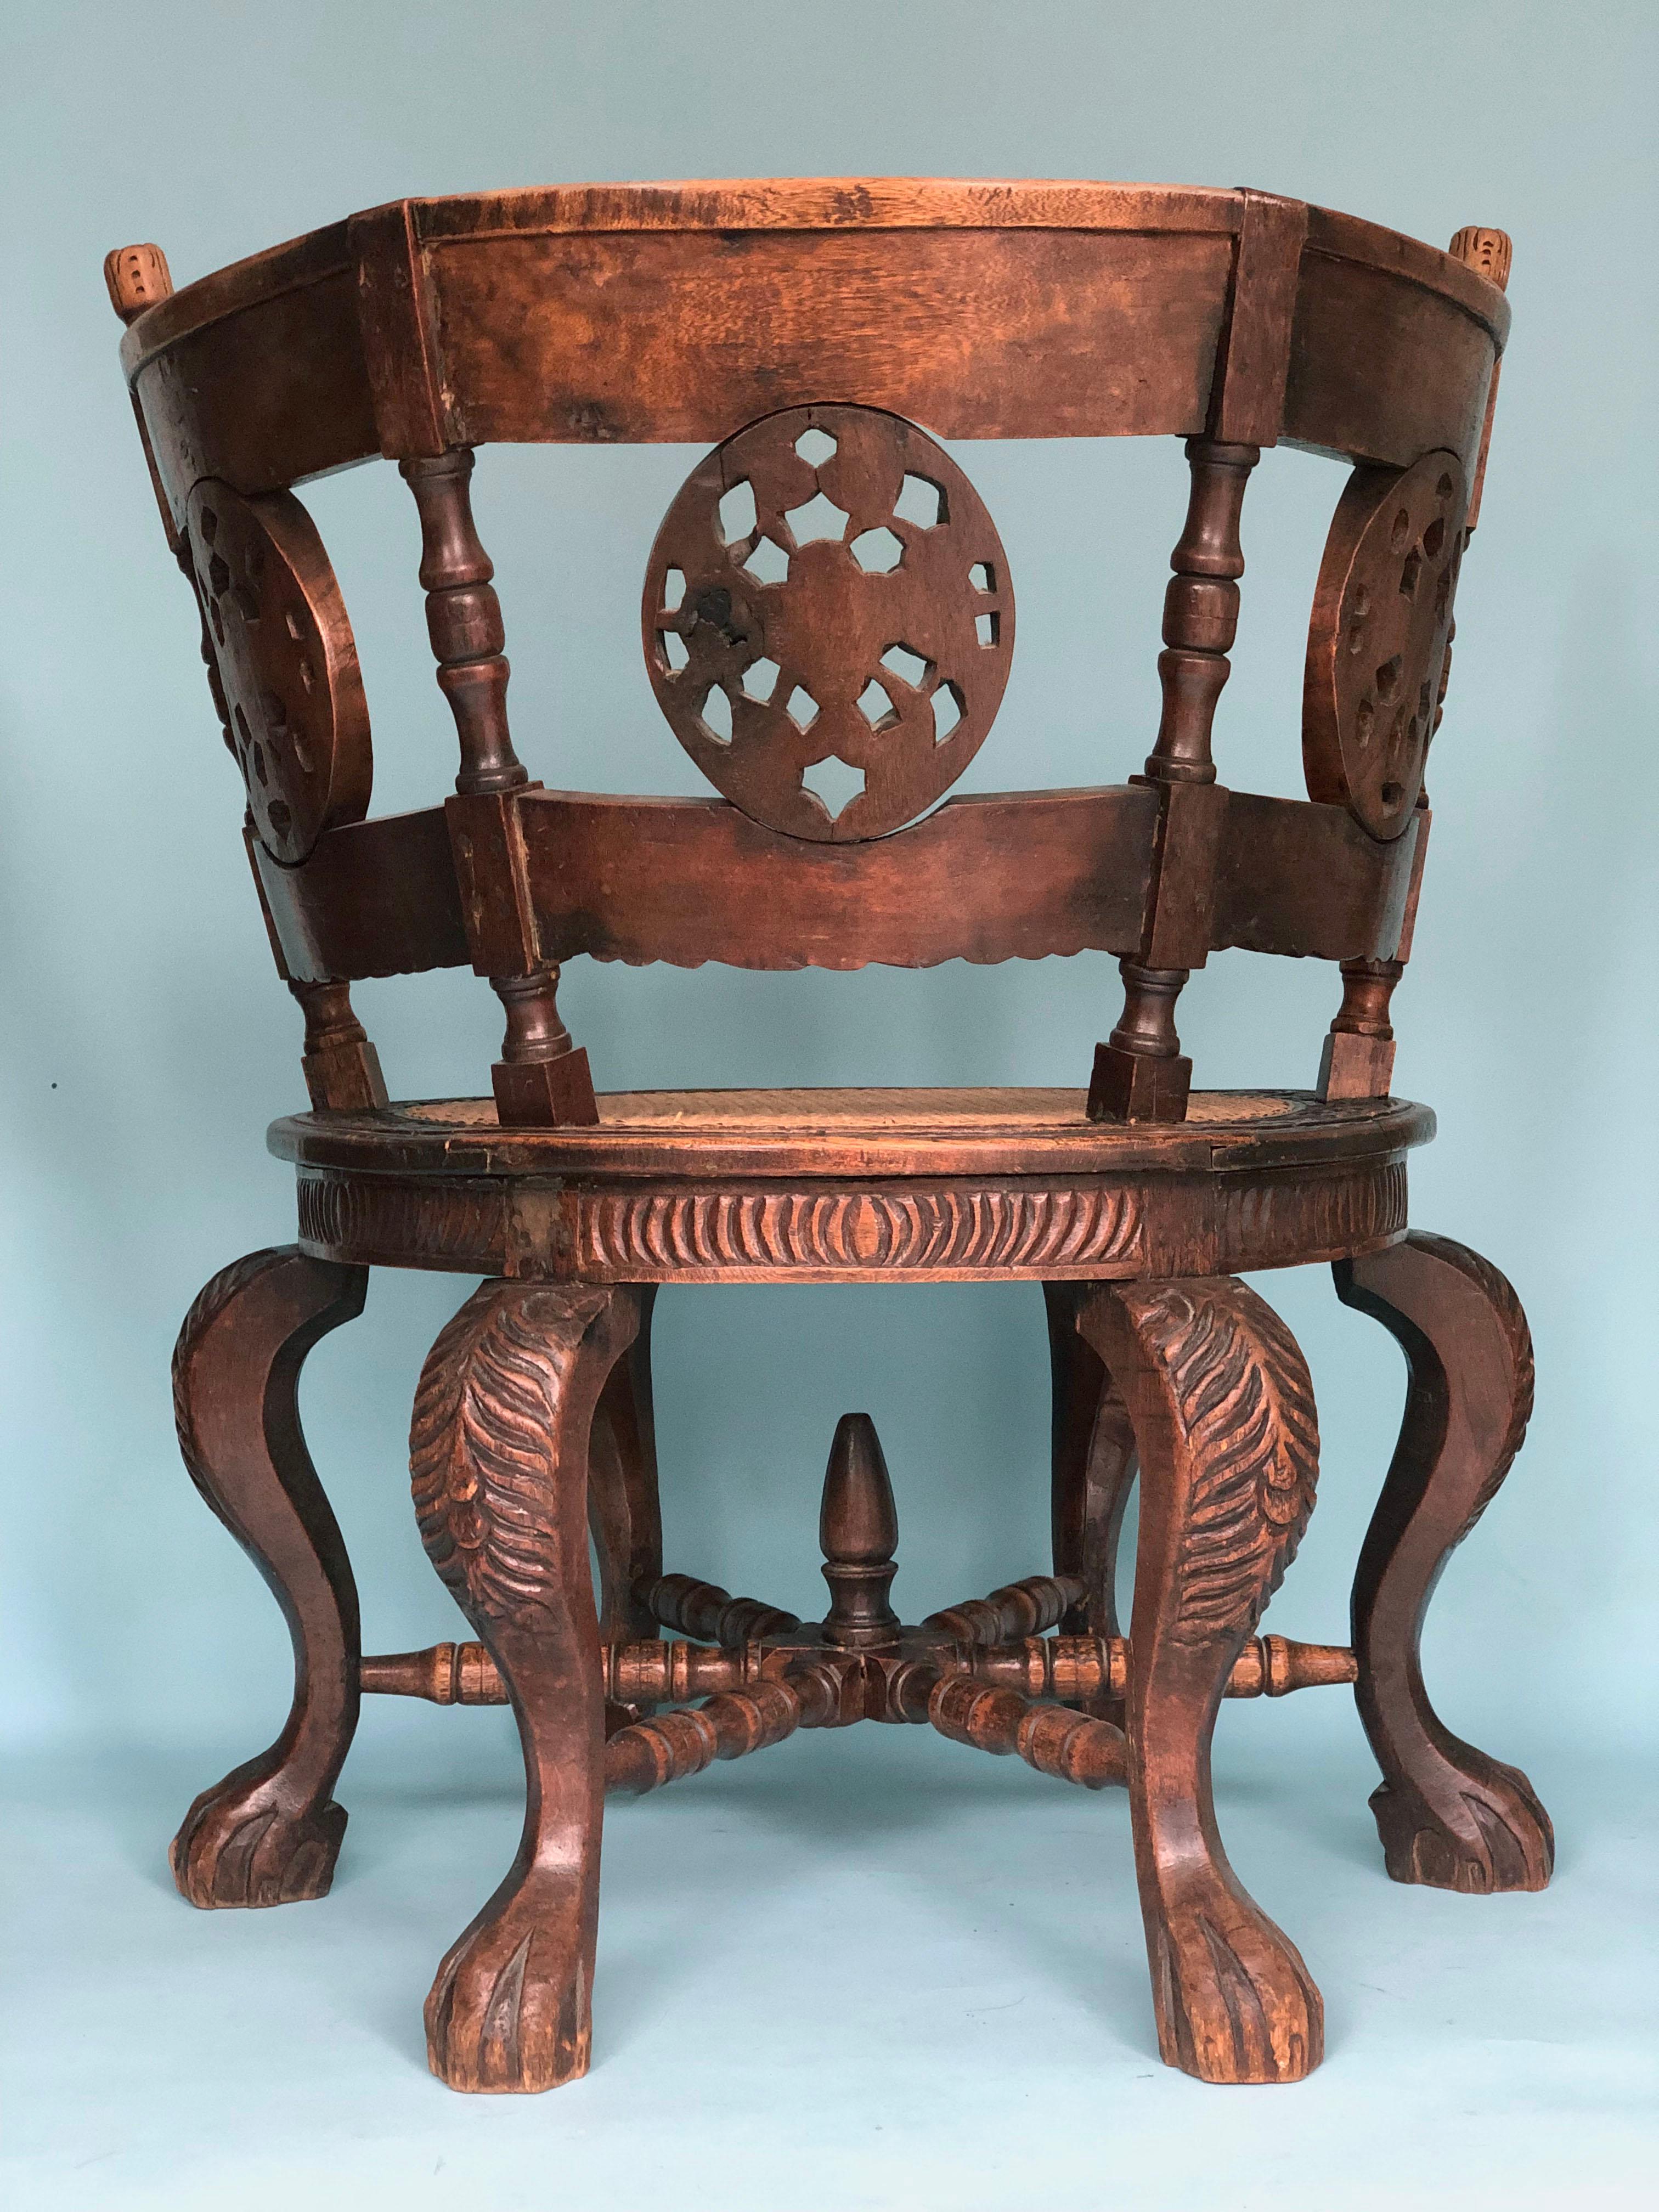 Cette magnifique chaise coloniale Burgomaster repose sur six pieds cabriole avec des pattes de lion, et possède un dossier semi-circulaire décoré de médaillons et de fleurs sculptés. Ce type de mobilier a été développé à la fin du XVIIe siècle dans